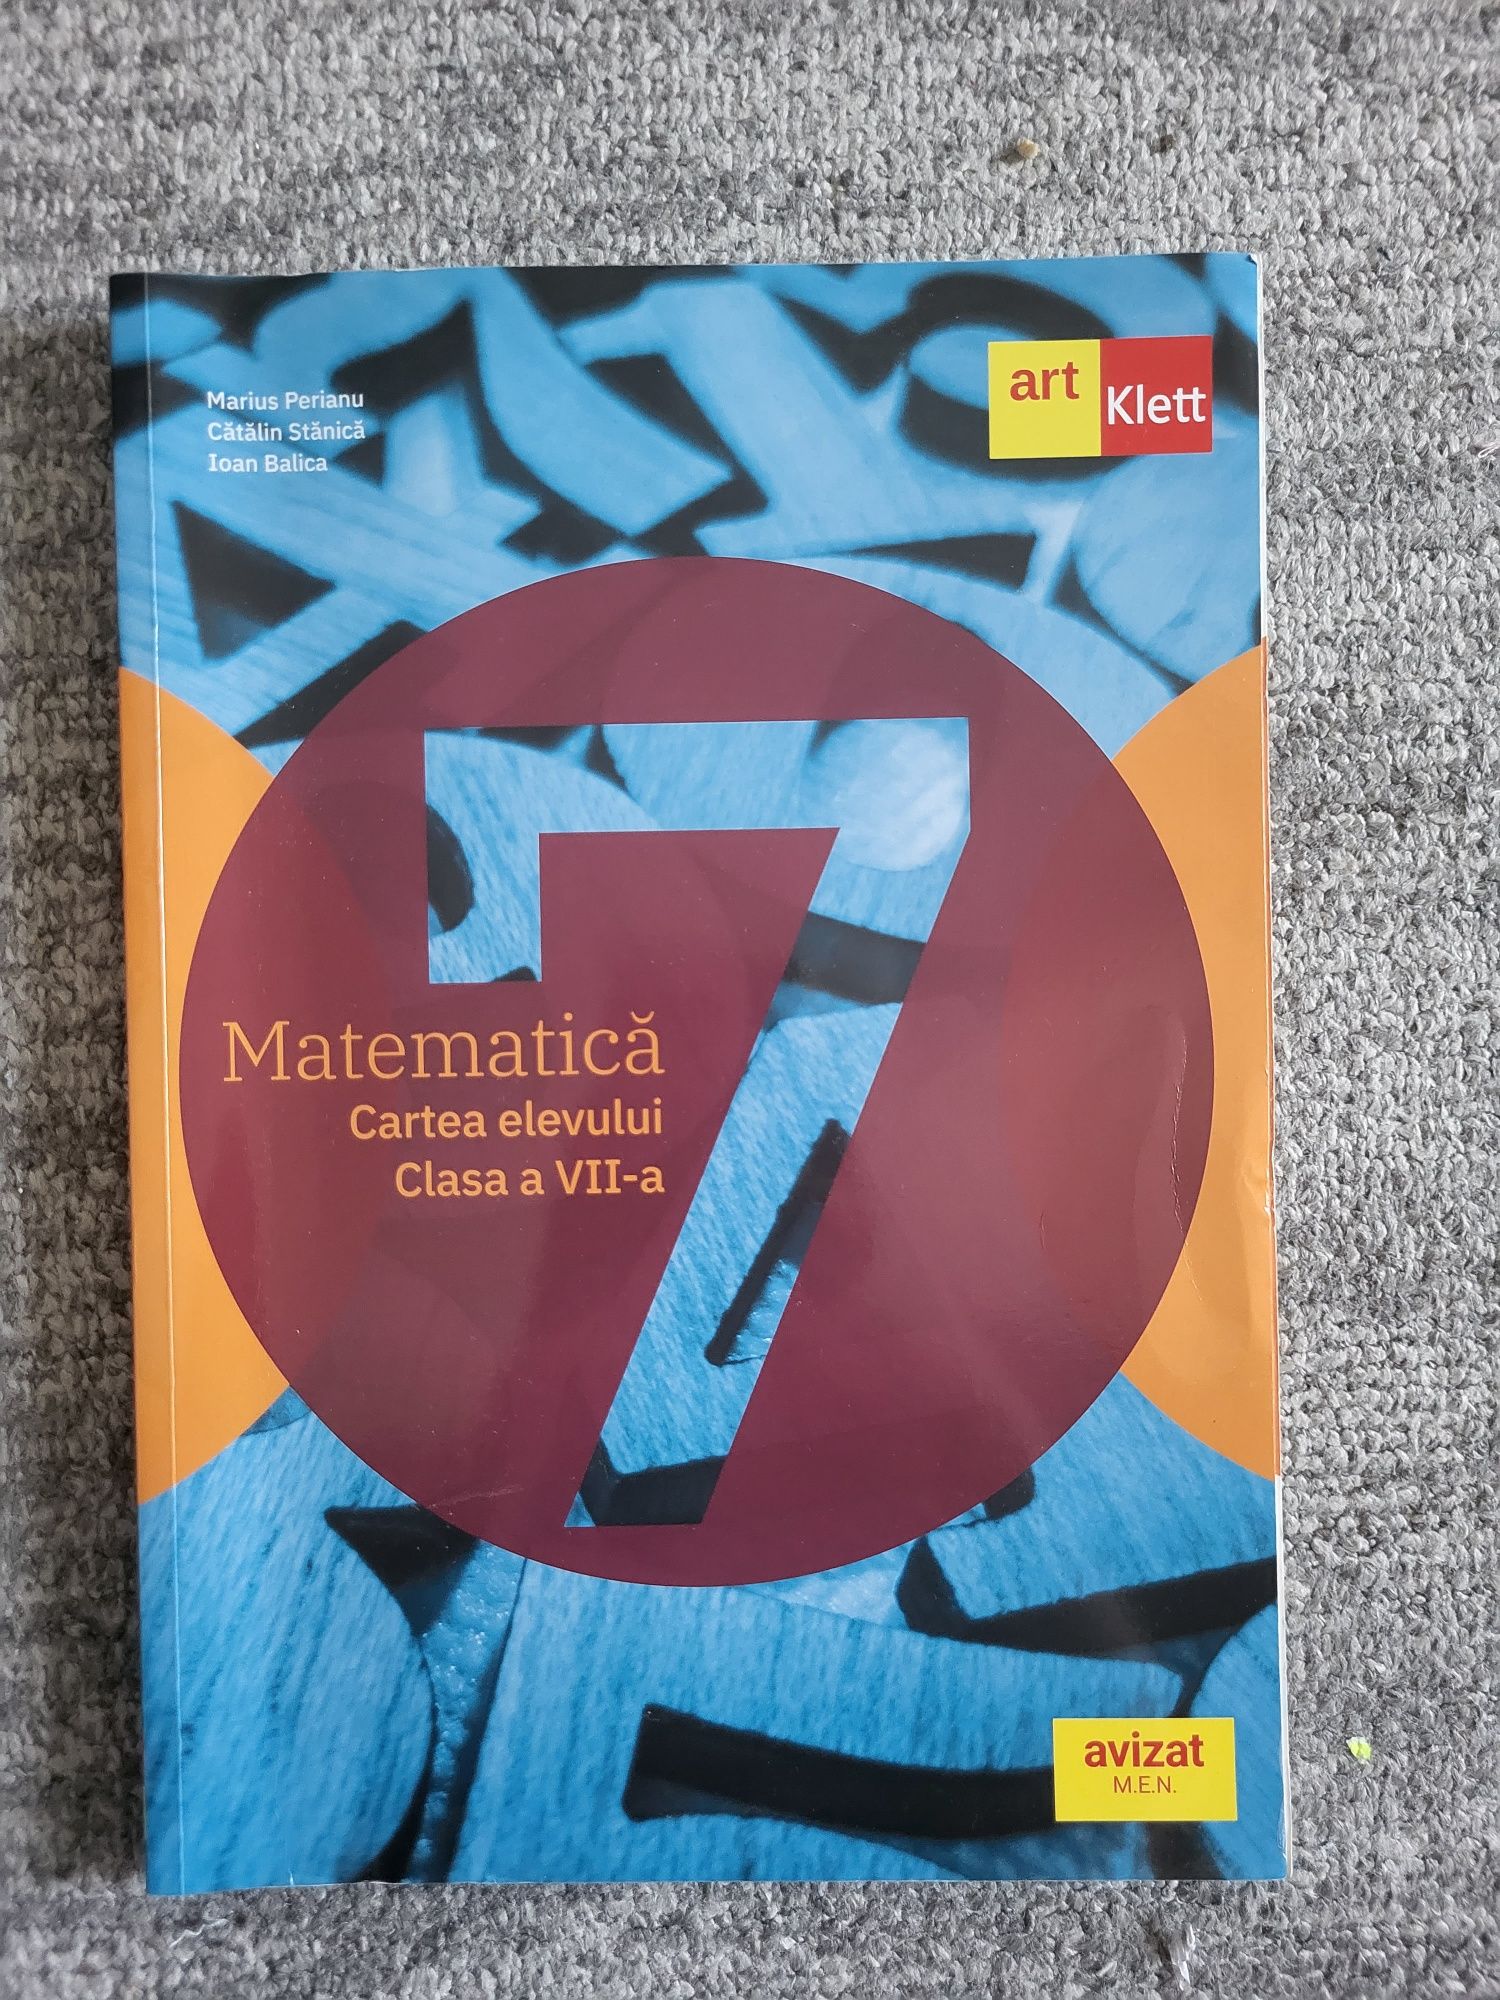 Cartea elevului Matematica art